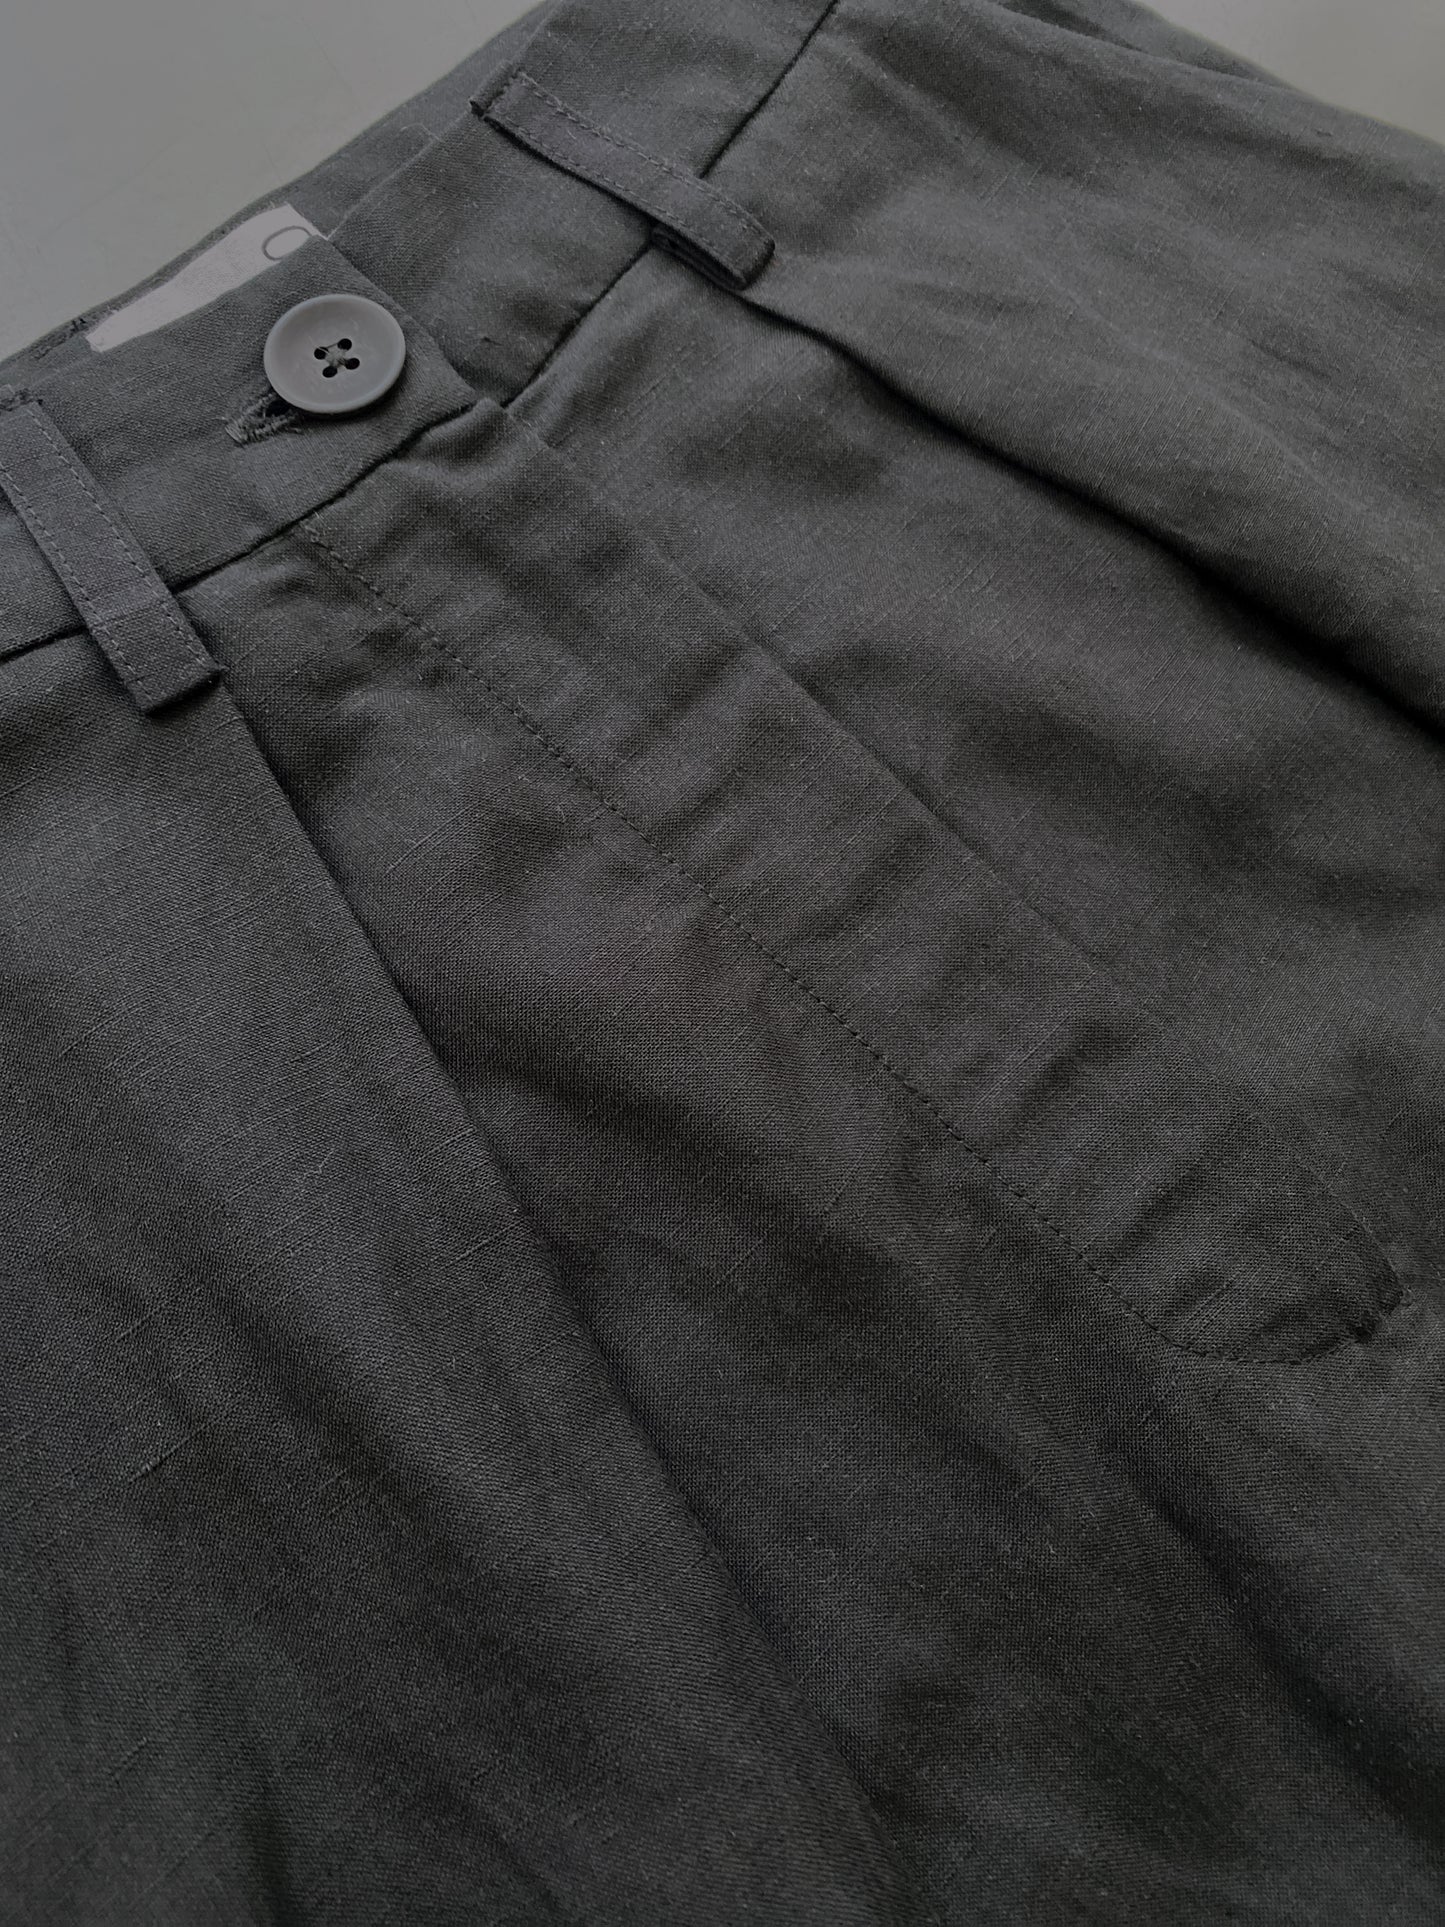 Deep Pleat Trouser in Black Washed Silk-Linen Blend